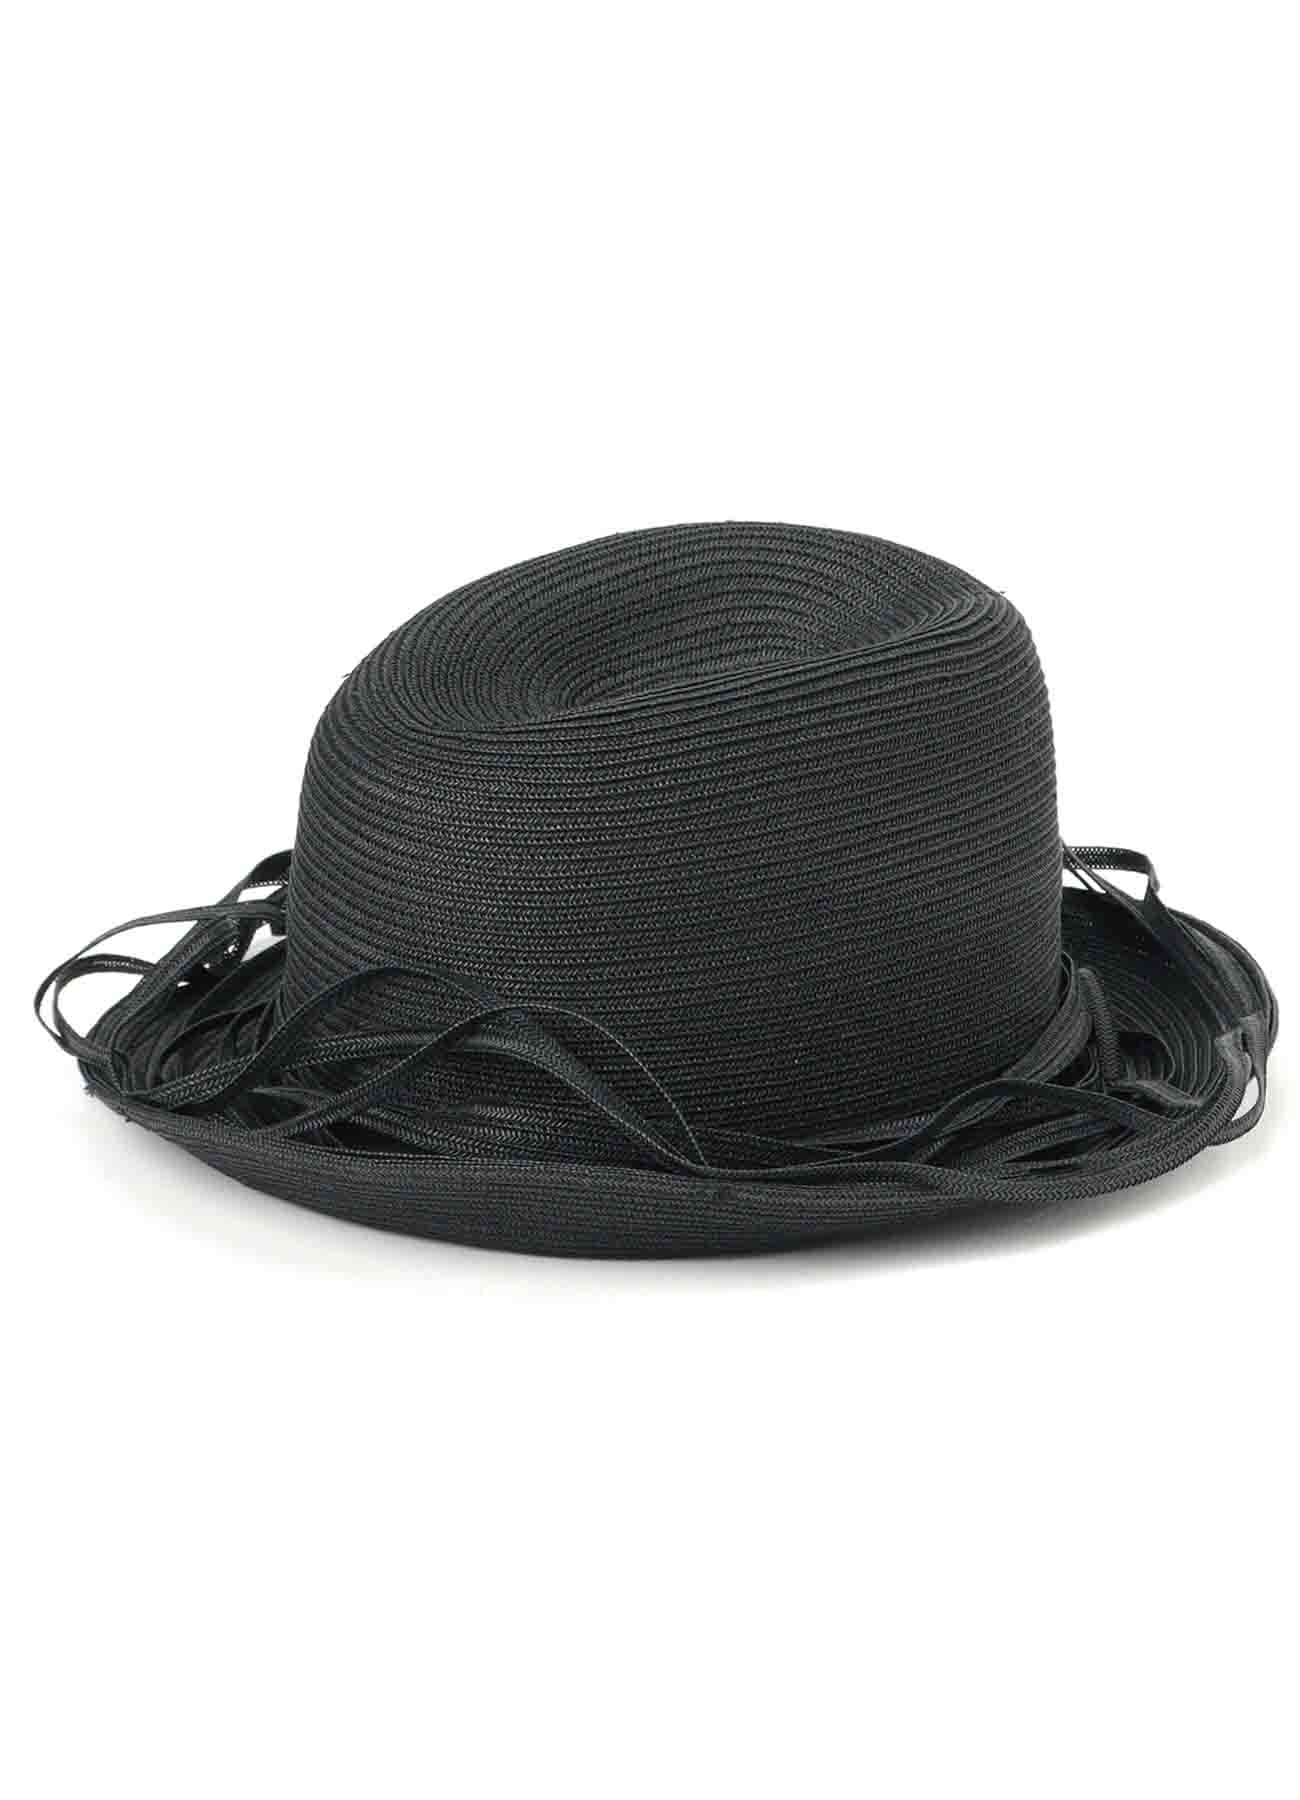 BRAIDED HAT